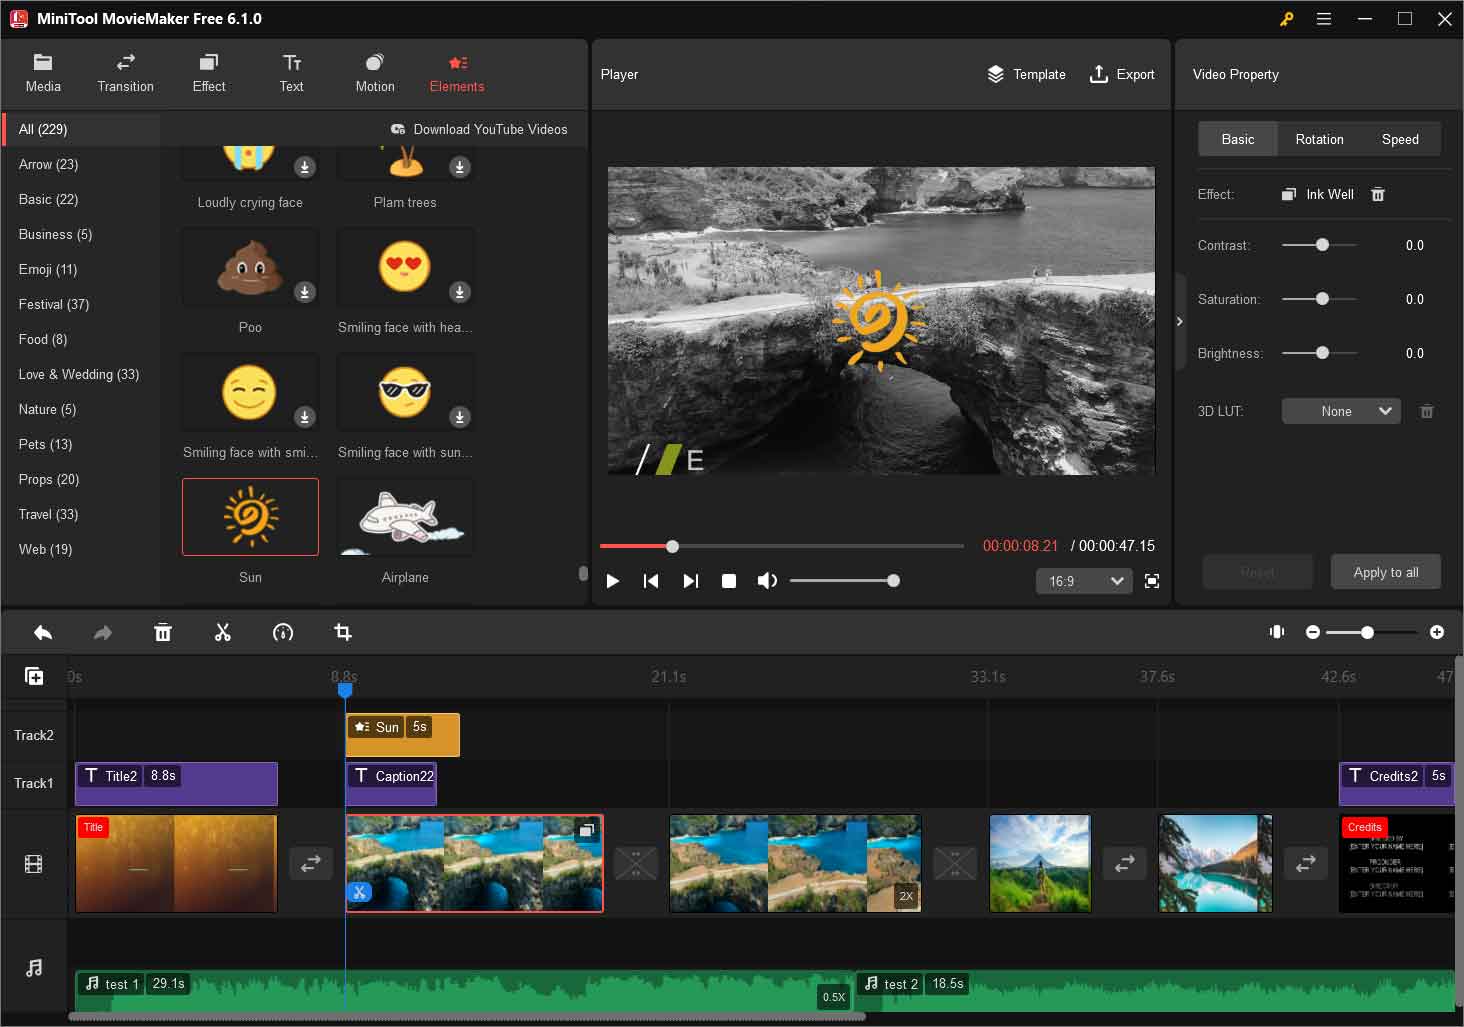 éditer une vidéo 1080p avec MiniTool MovieMaker